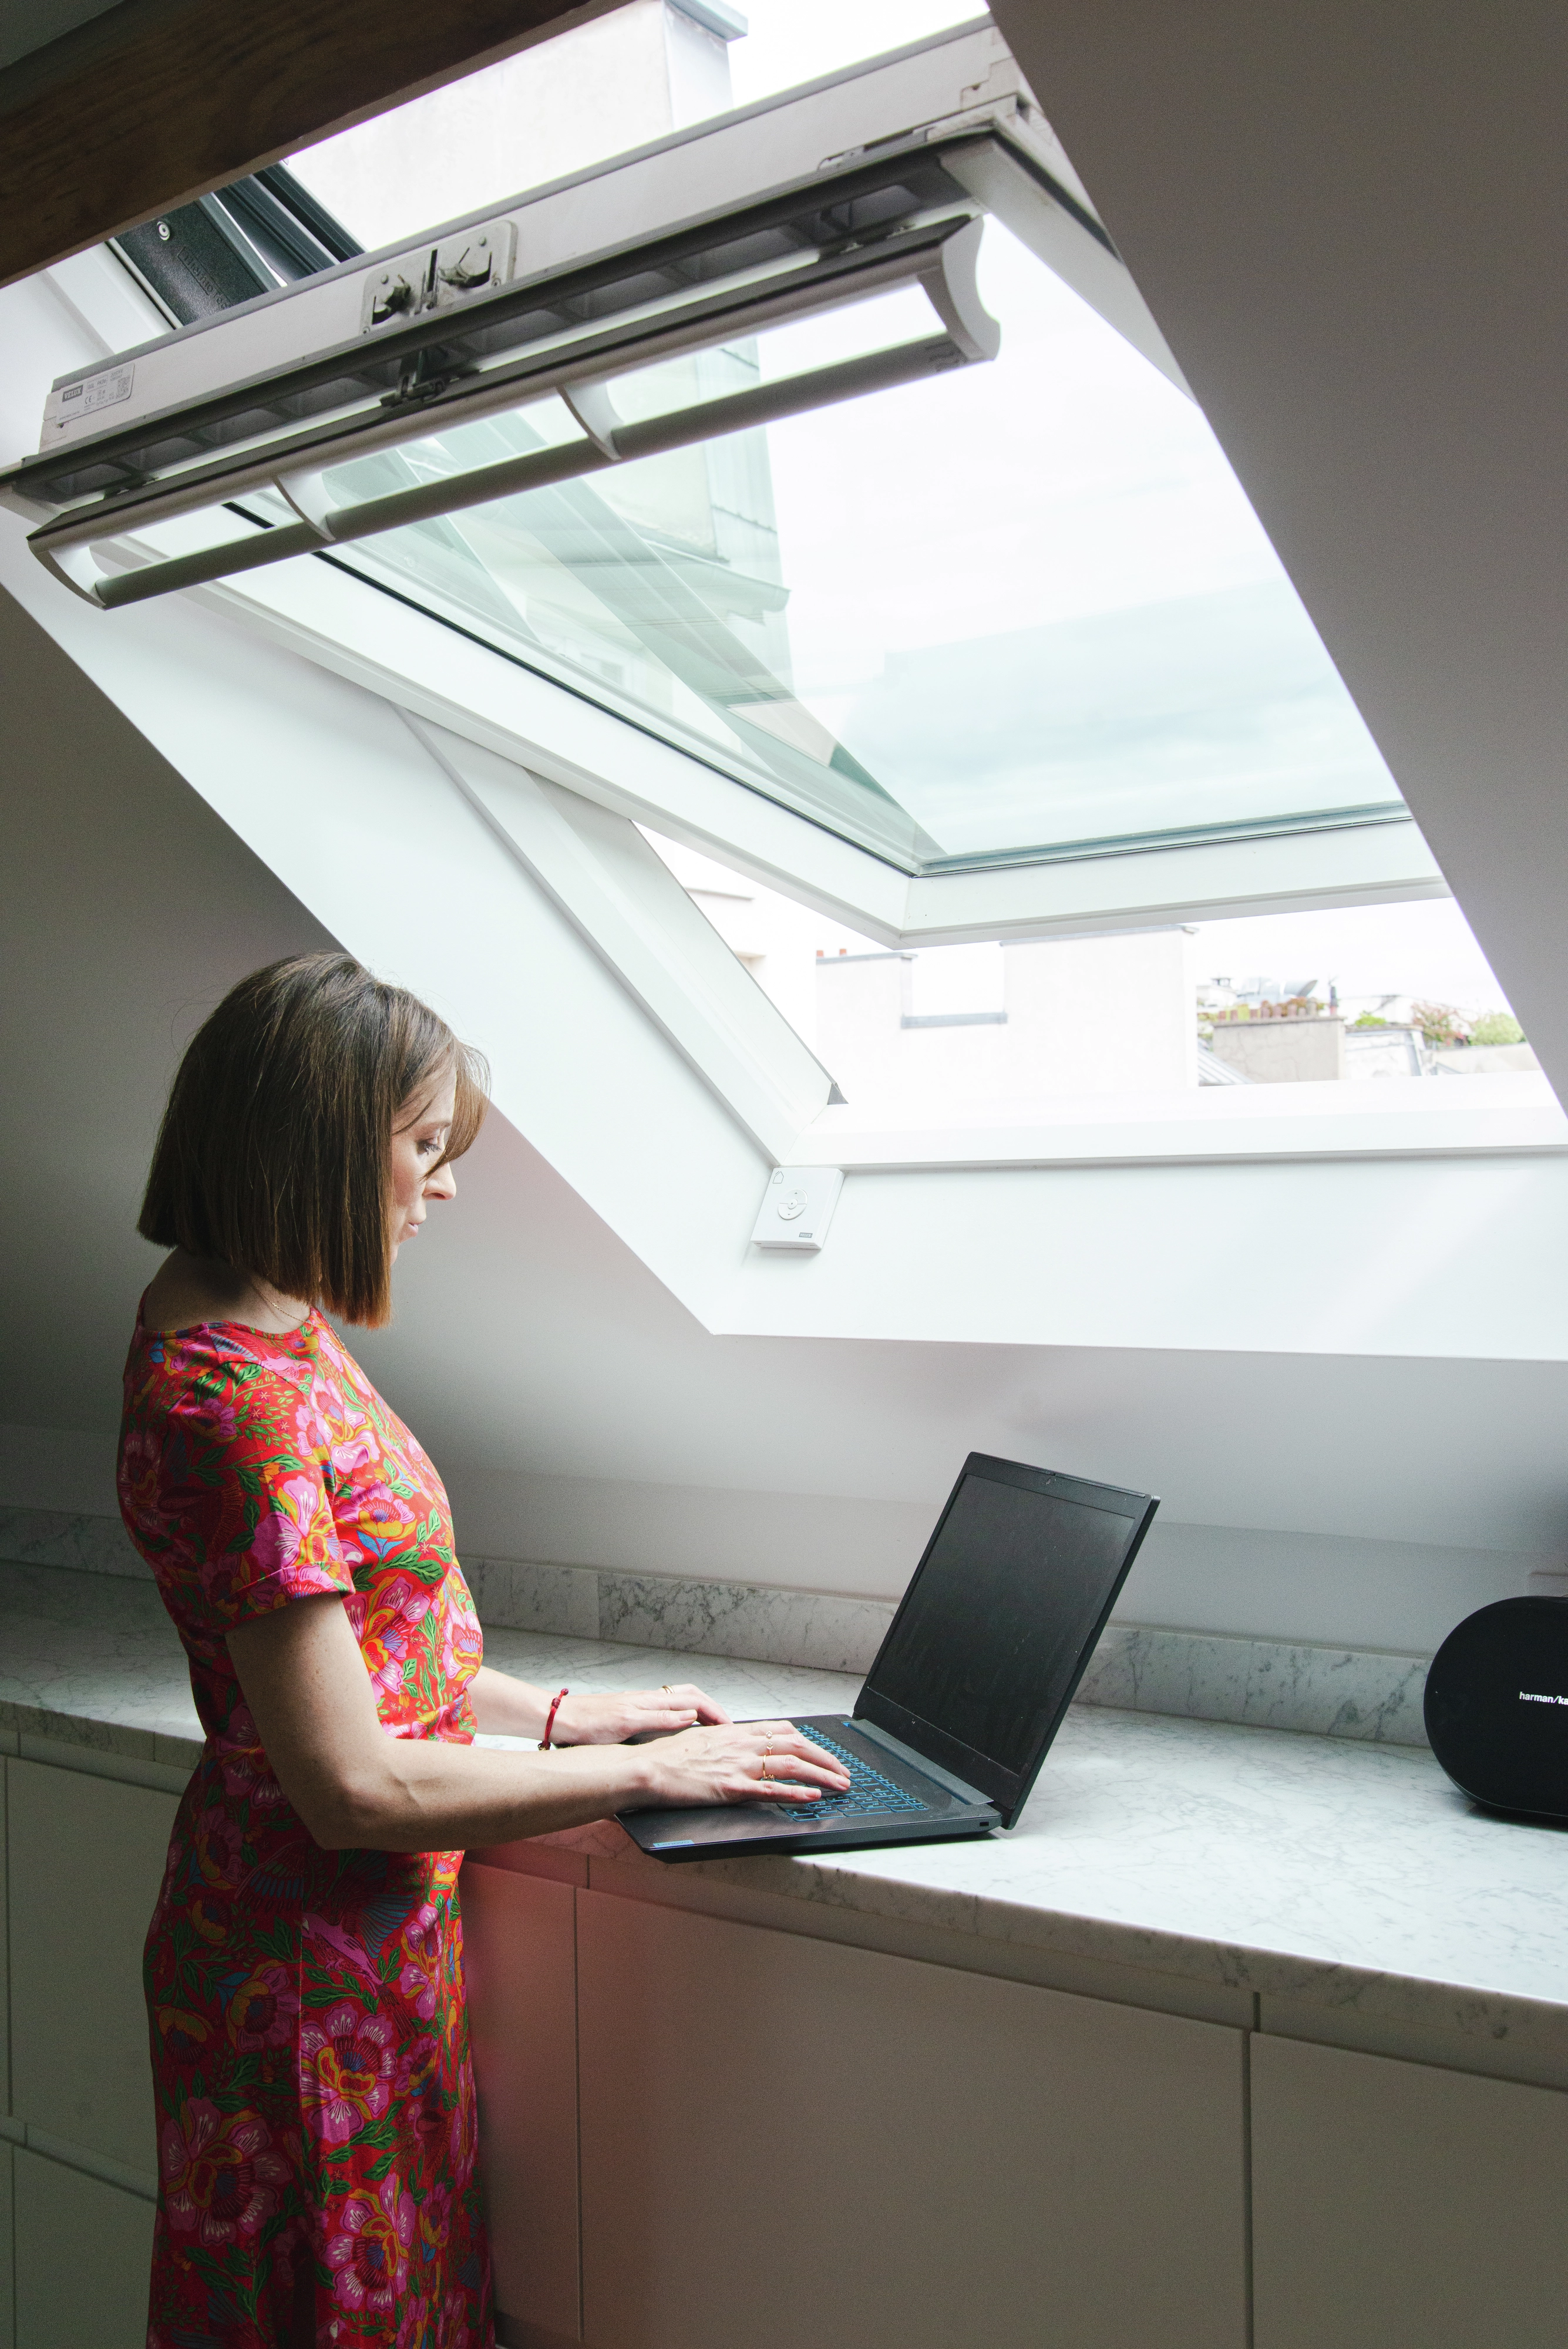 Bureau à domicile avec fenêtre de toit VELUX, bureau en marbre et ordinateur portable, sous un ciel transparent.